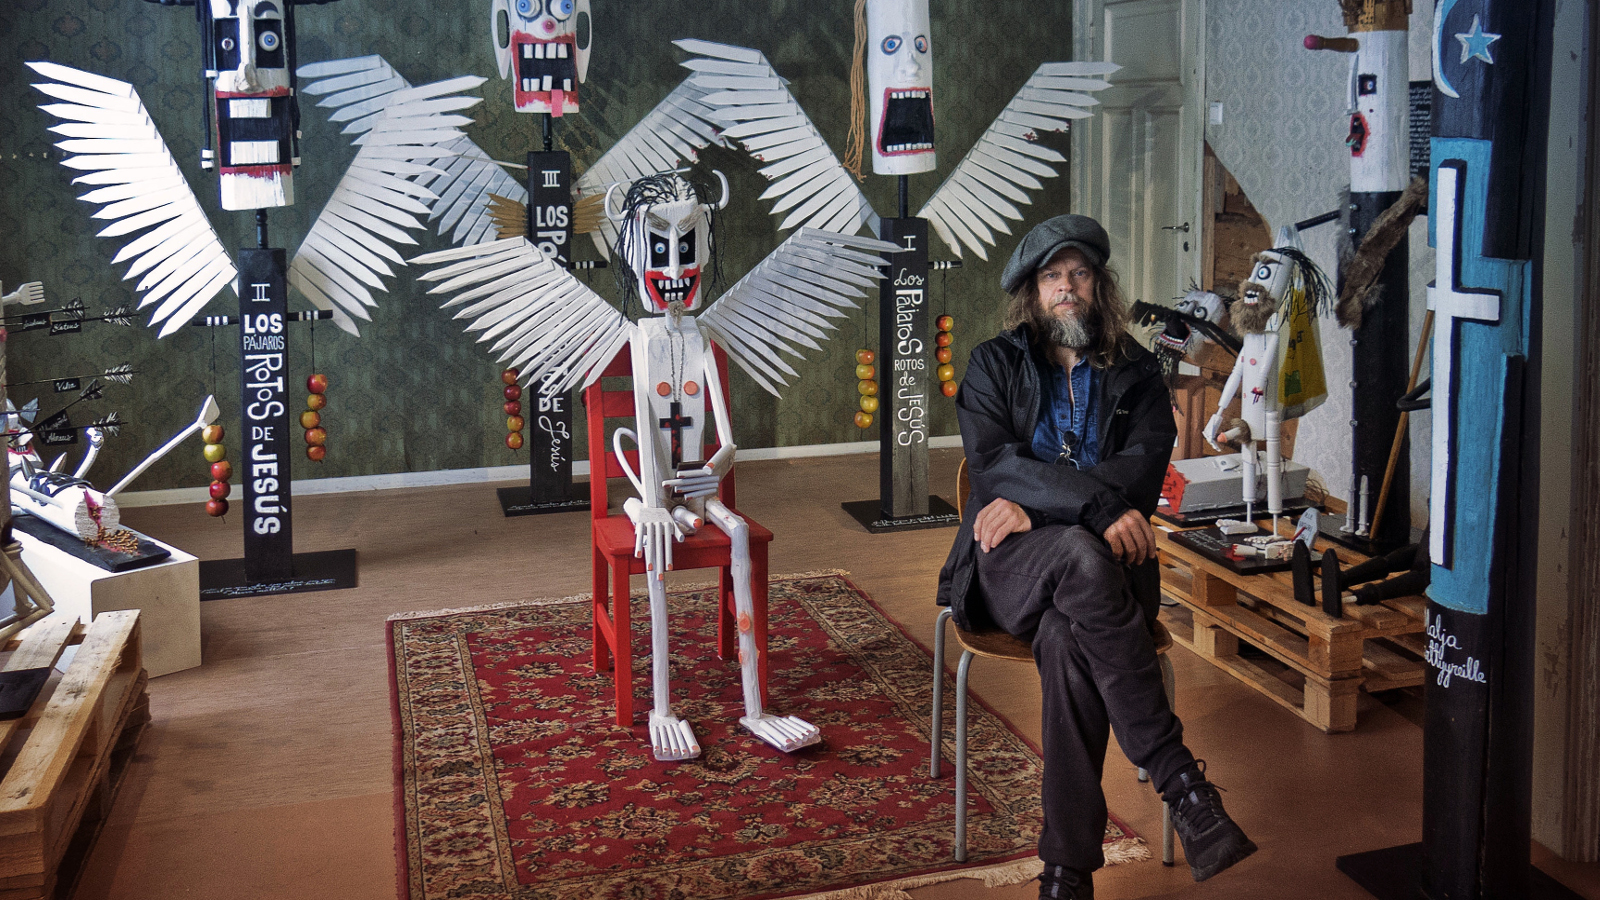 Kuvassa on Jori Tapio Kalliola istumassa tuolilla etuoikealla.  Taustalla on hänen näyttelytilaansa.  Siellä on värikkäitä töitä ja metallisia linnunsiipisiä olentoja keskellä.